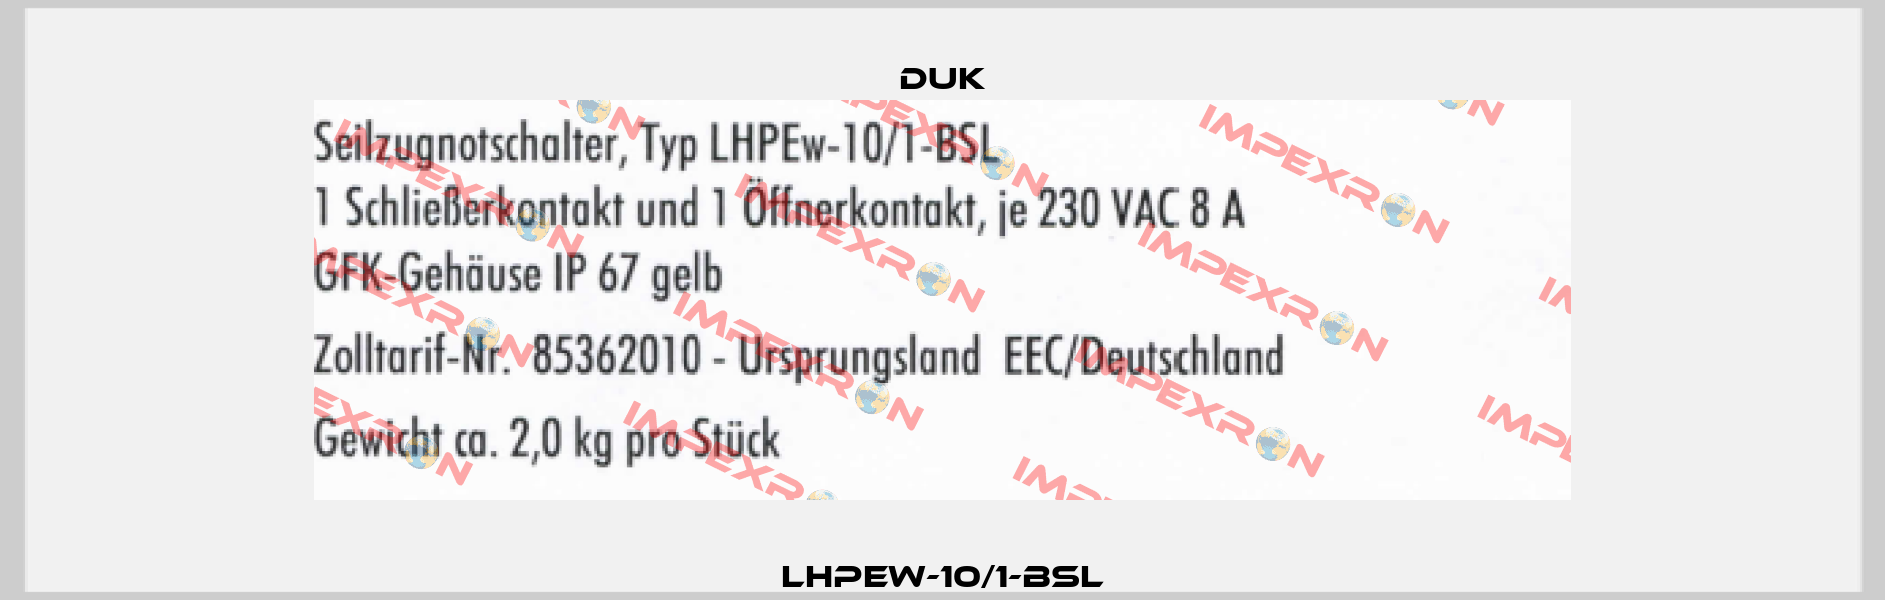 LHPEw-10/1-BSL DUK